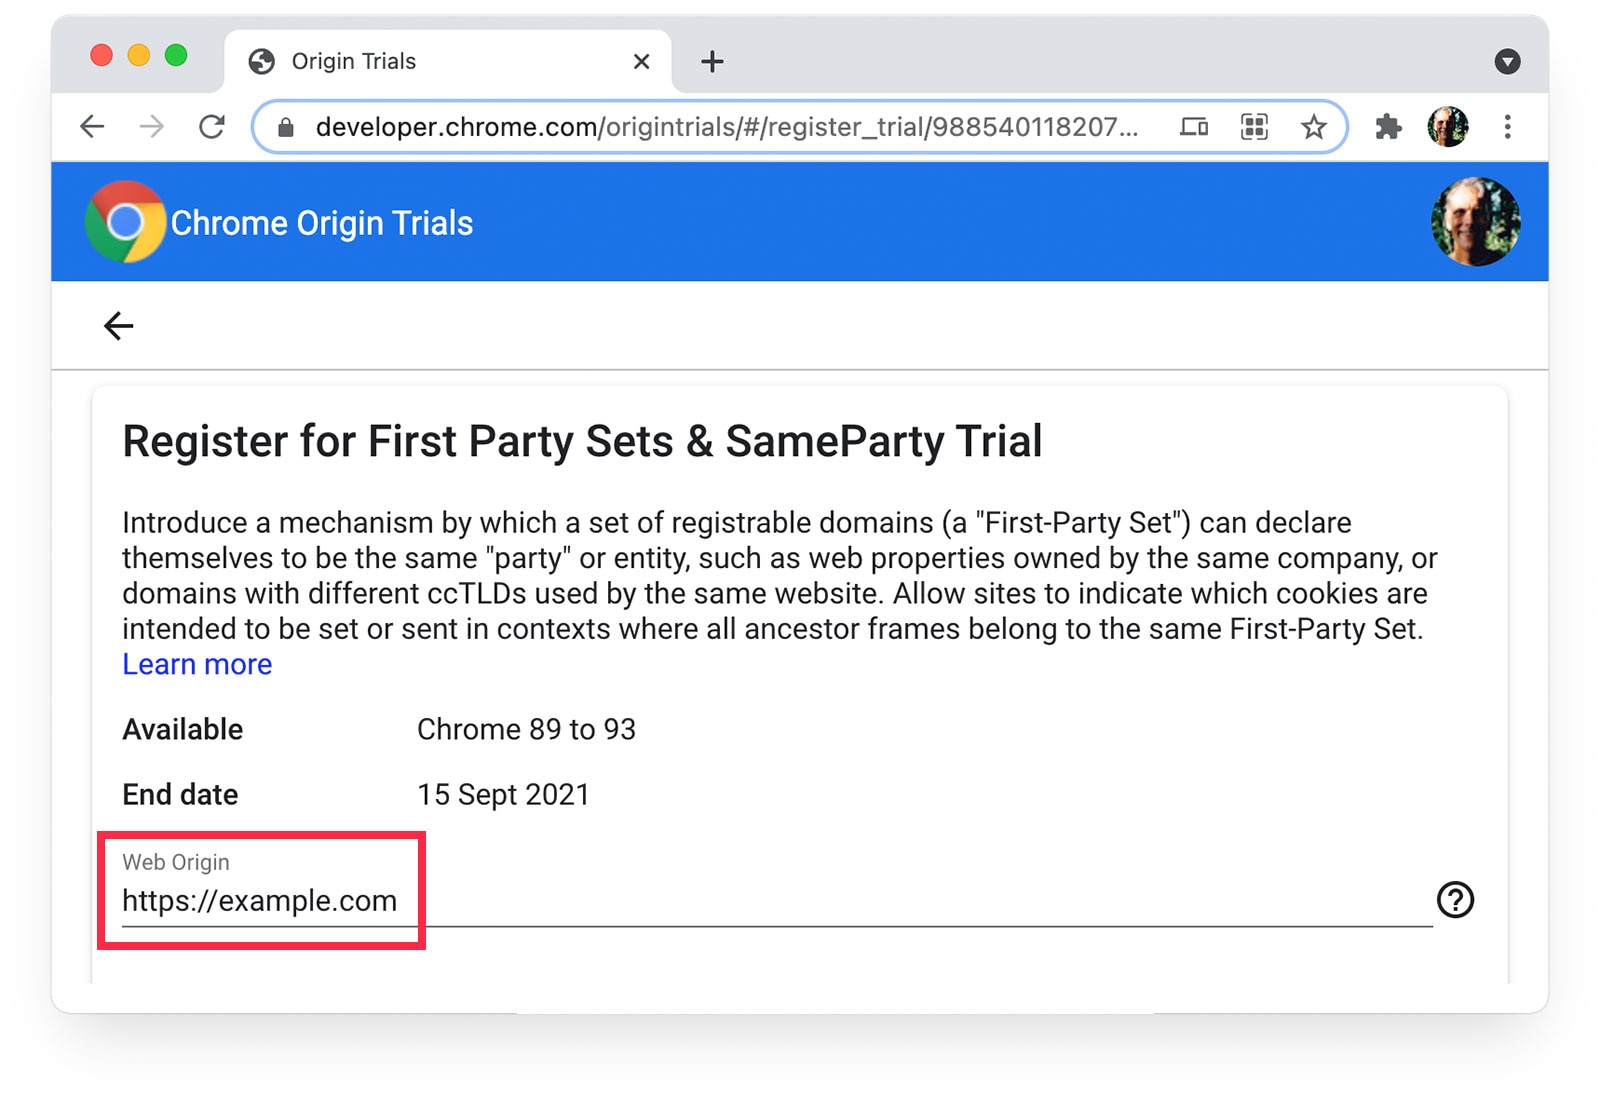 Chrome-Ursprungstests 
Seite, auf der „https://beispiel.de“ als Webursprung ausgewählt ist.